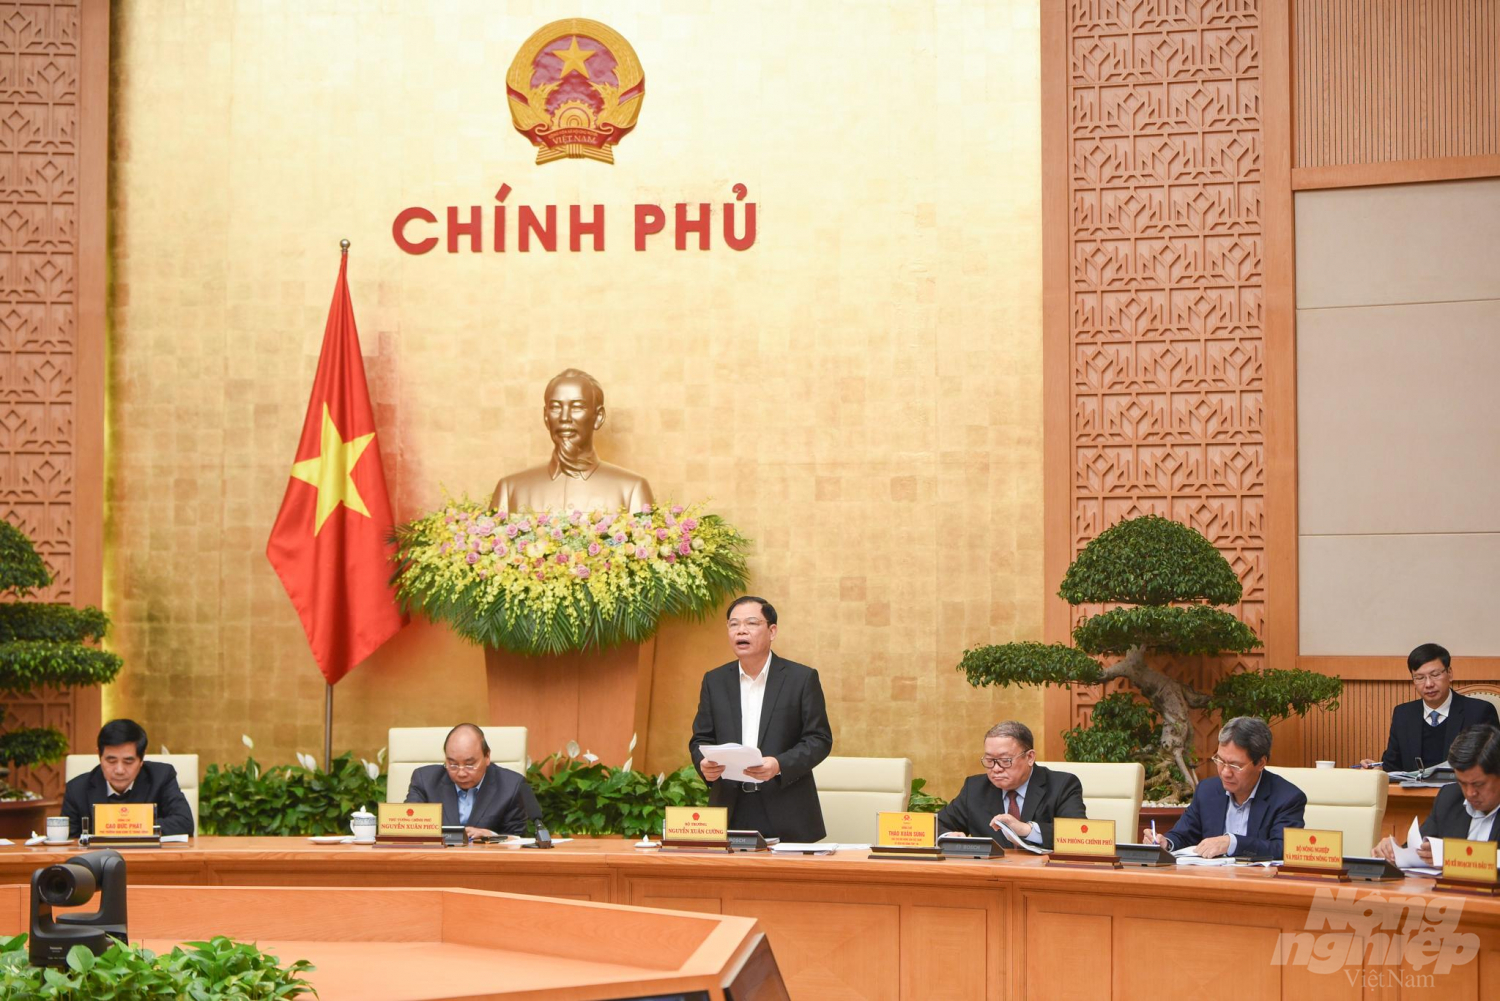 Theo Bộ trưởng Nguyễn Xuân Cường, Việt Nam cần áp dụng khoa học công nghệ, nhất là công nghệ 4.0 và hệ thống quản lý chất lượng tiên tiến vào chế biến nông sản. Ảnh: Tùng Đinh.